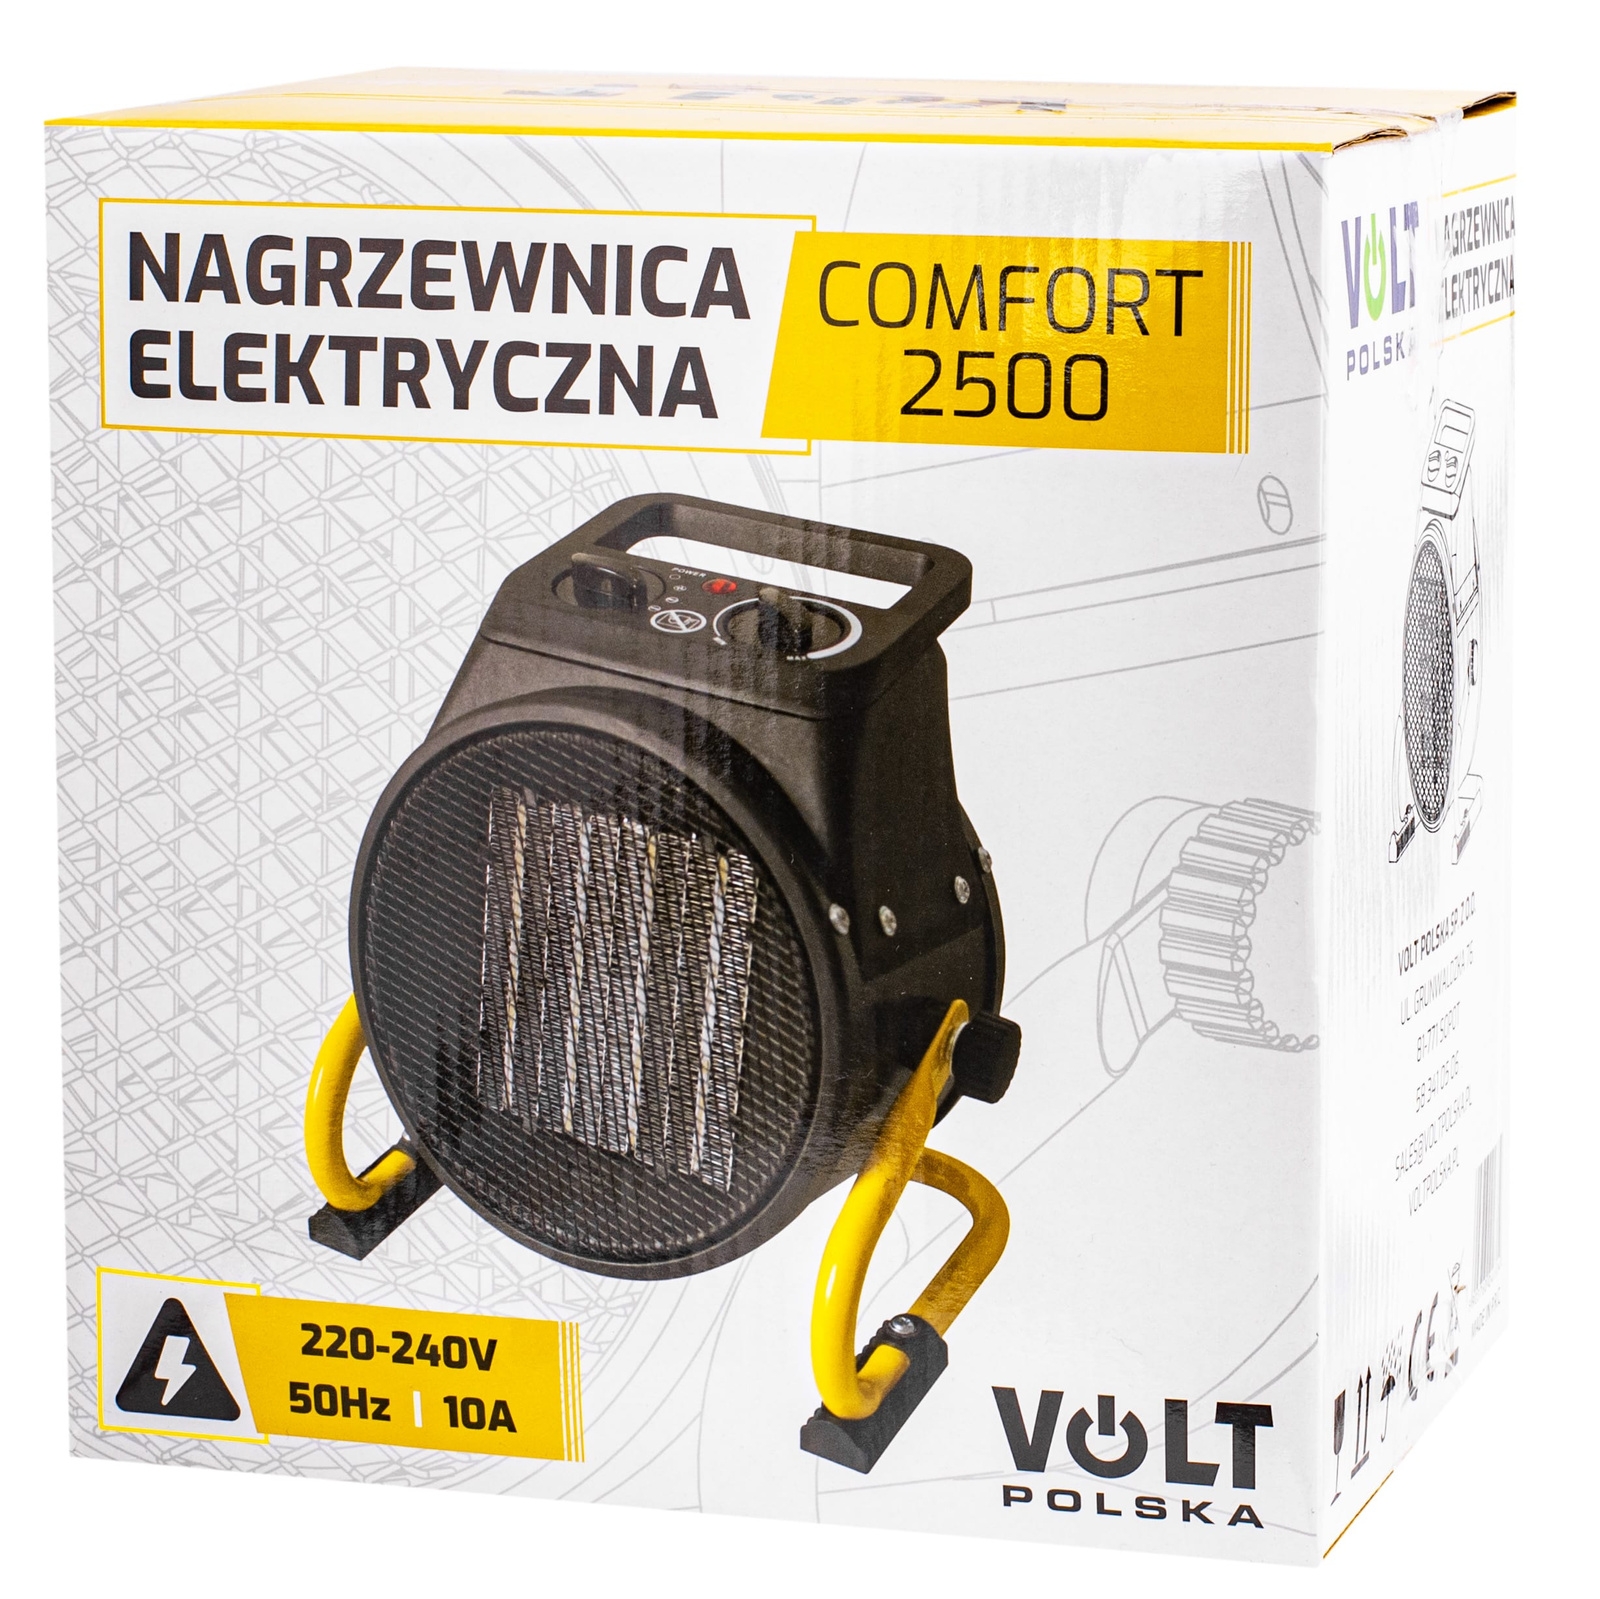 Image of Nagrzewnica elektryczna grzejnik farelka z termostatem 2,5 kW COMFORT VOLT POLSKA